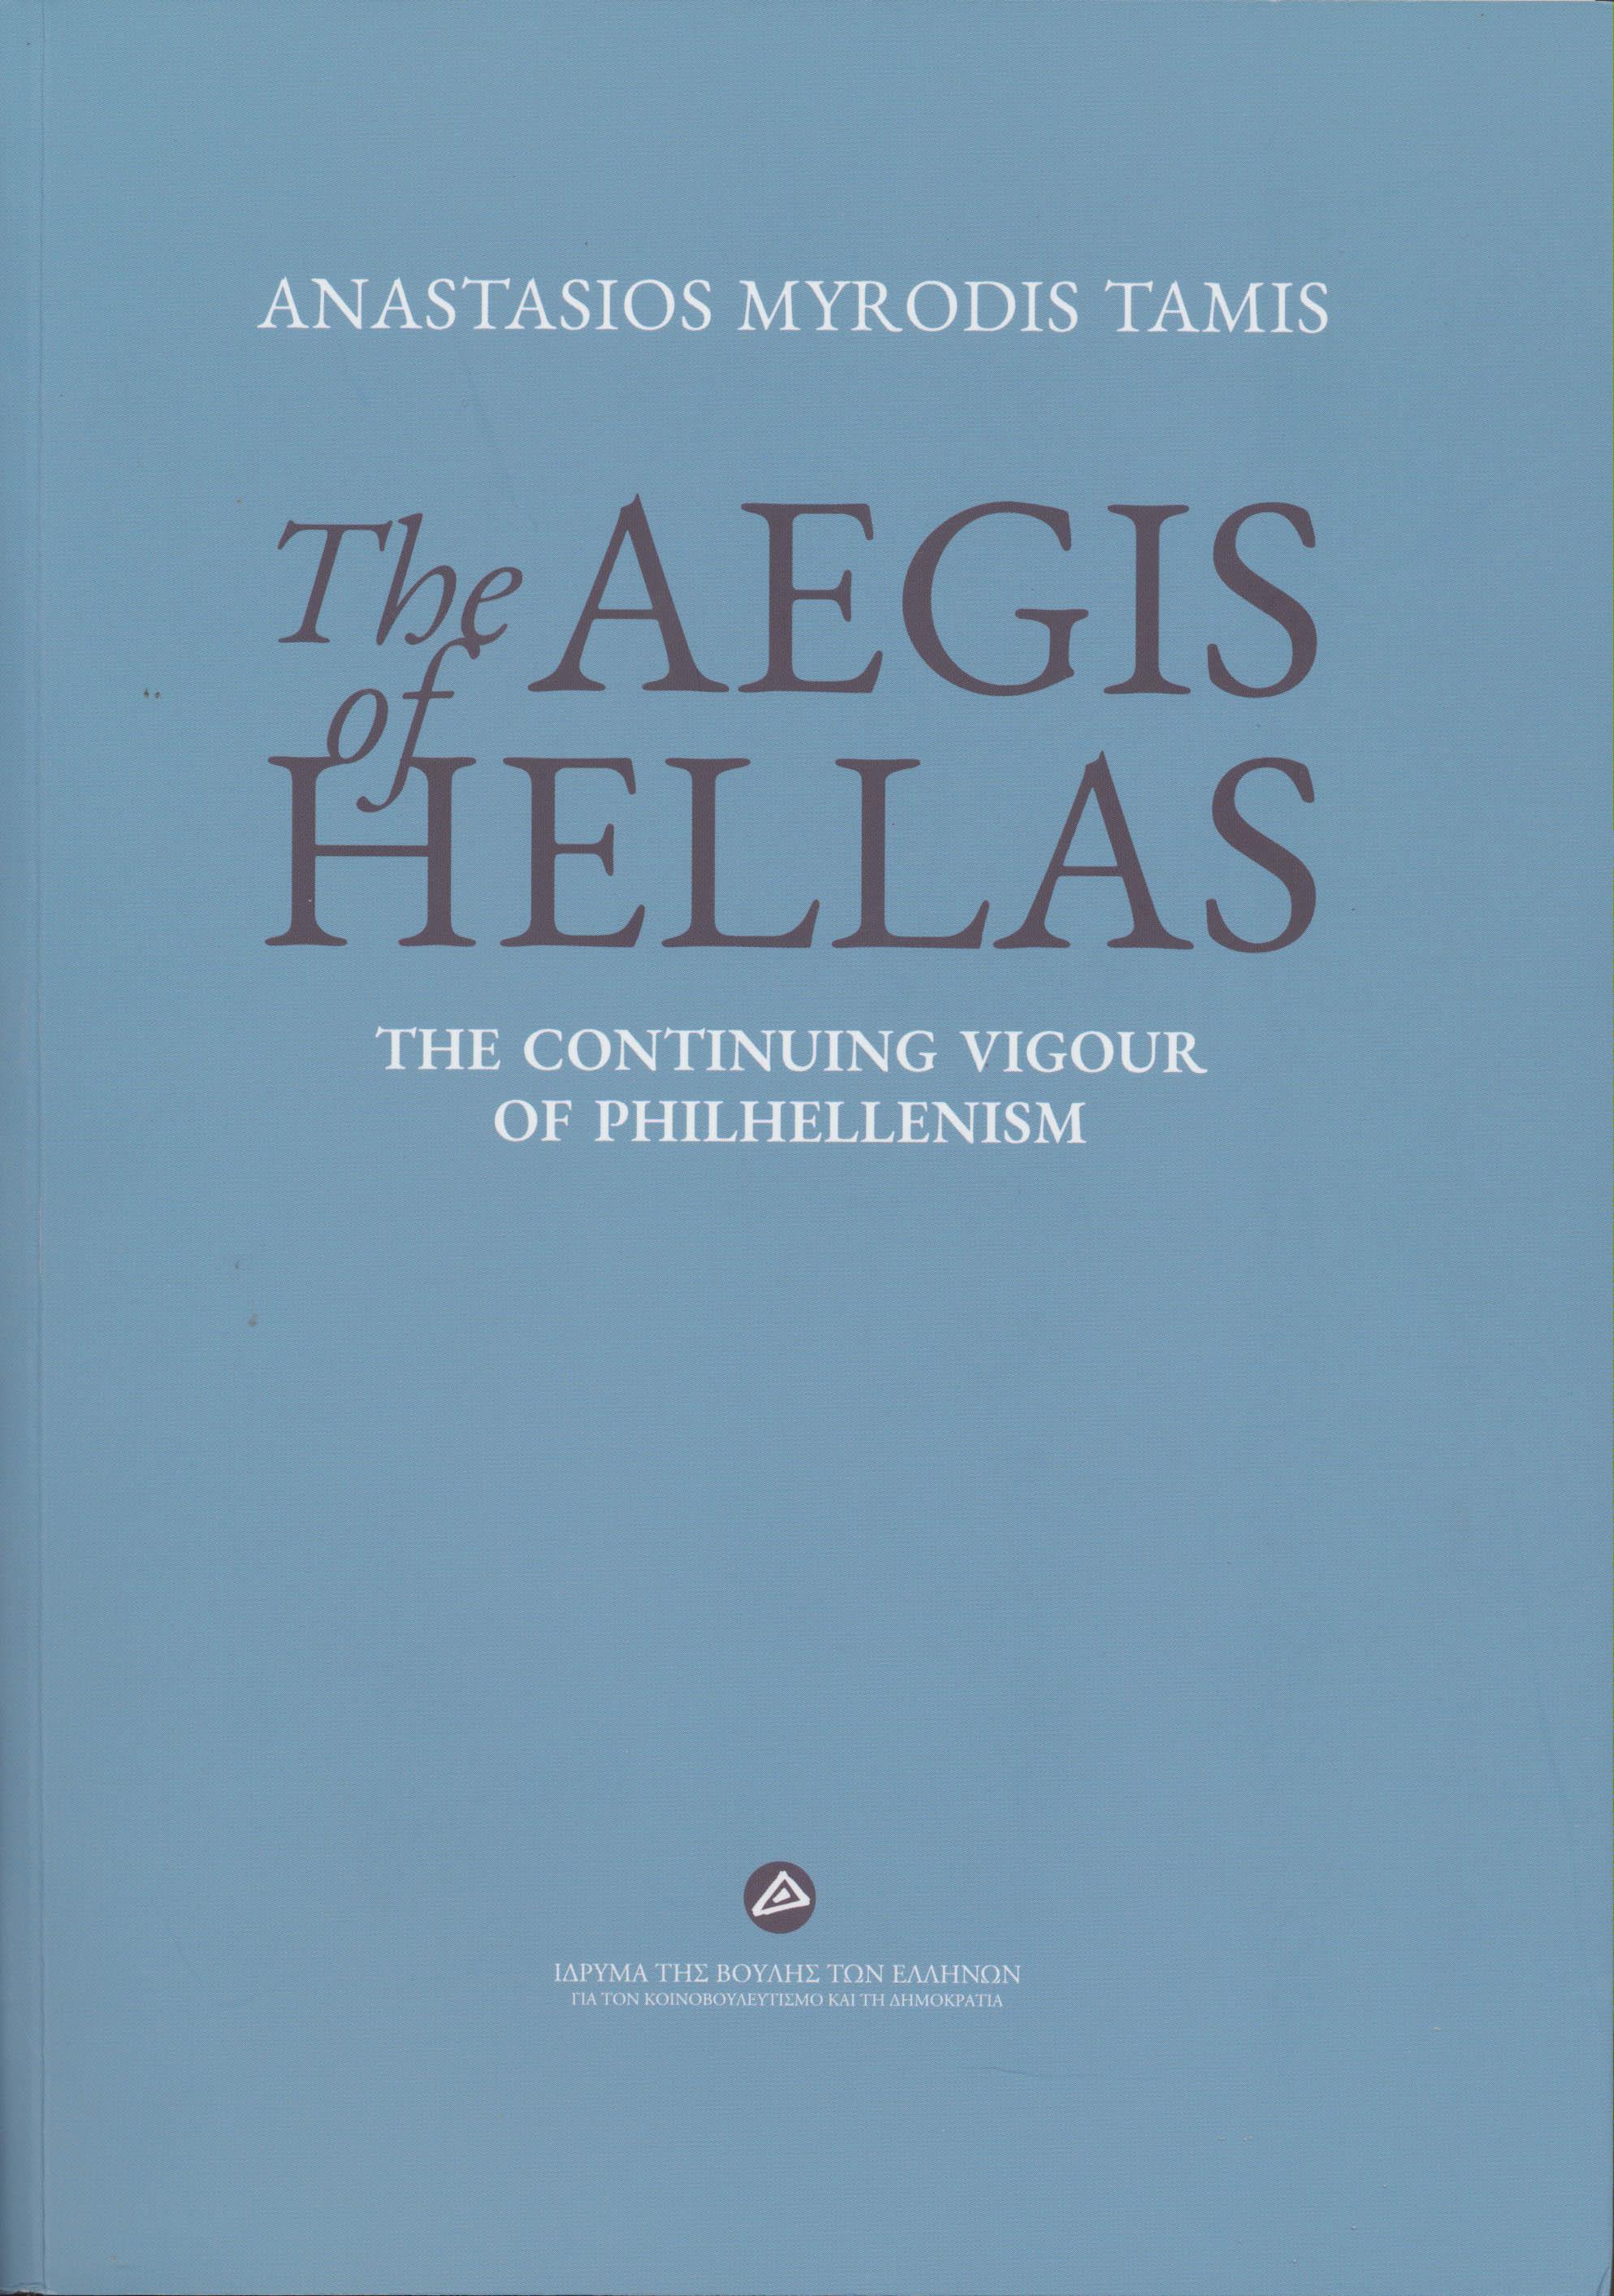 The Aegis of Hellas